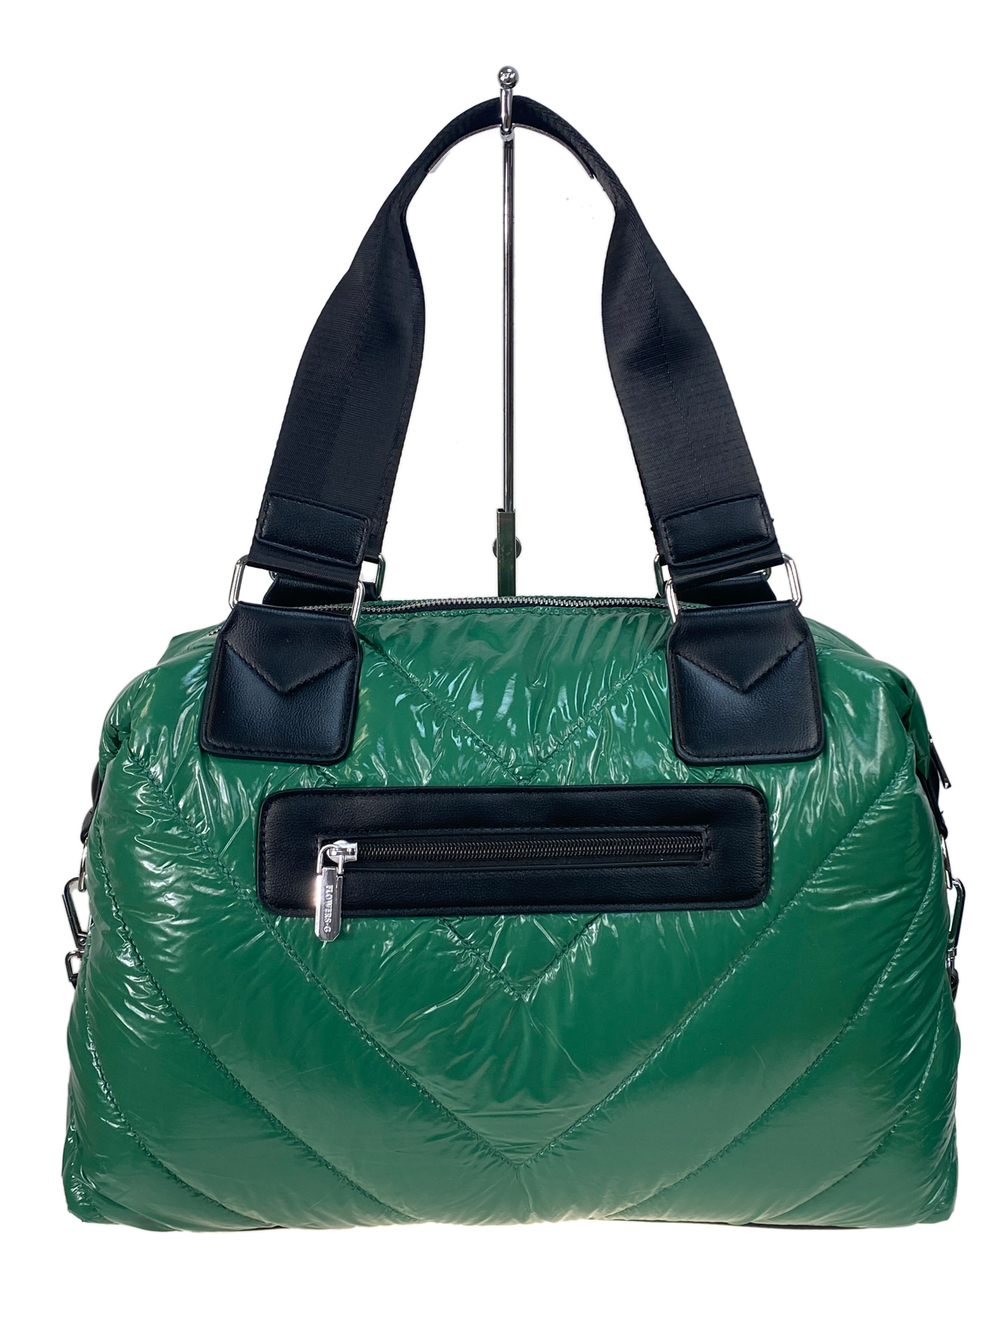 Стильная женская сумка-шоппер из водоотталкивающей ткани, цвет зеленый